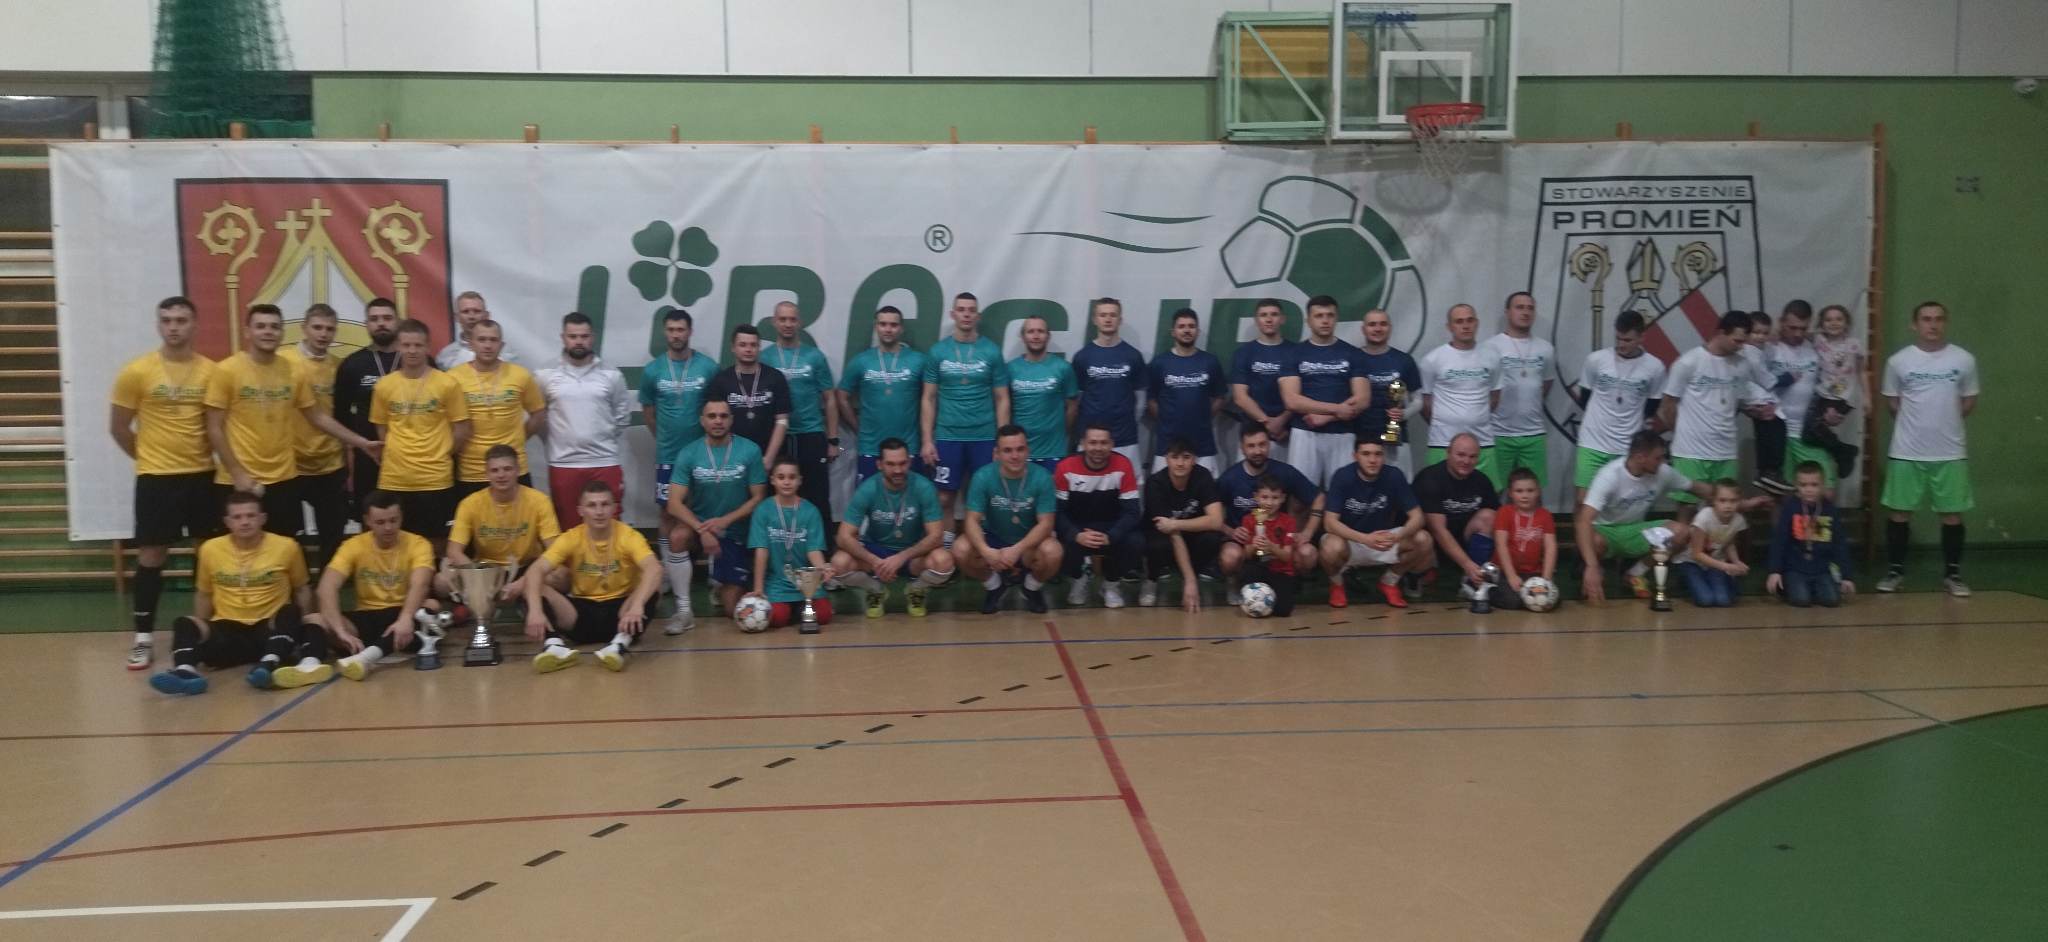 Futsal Lajszner zwycięzcą największego halowego turnieju piłkarskiego w Wielkopolsce